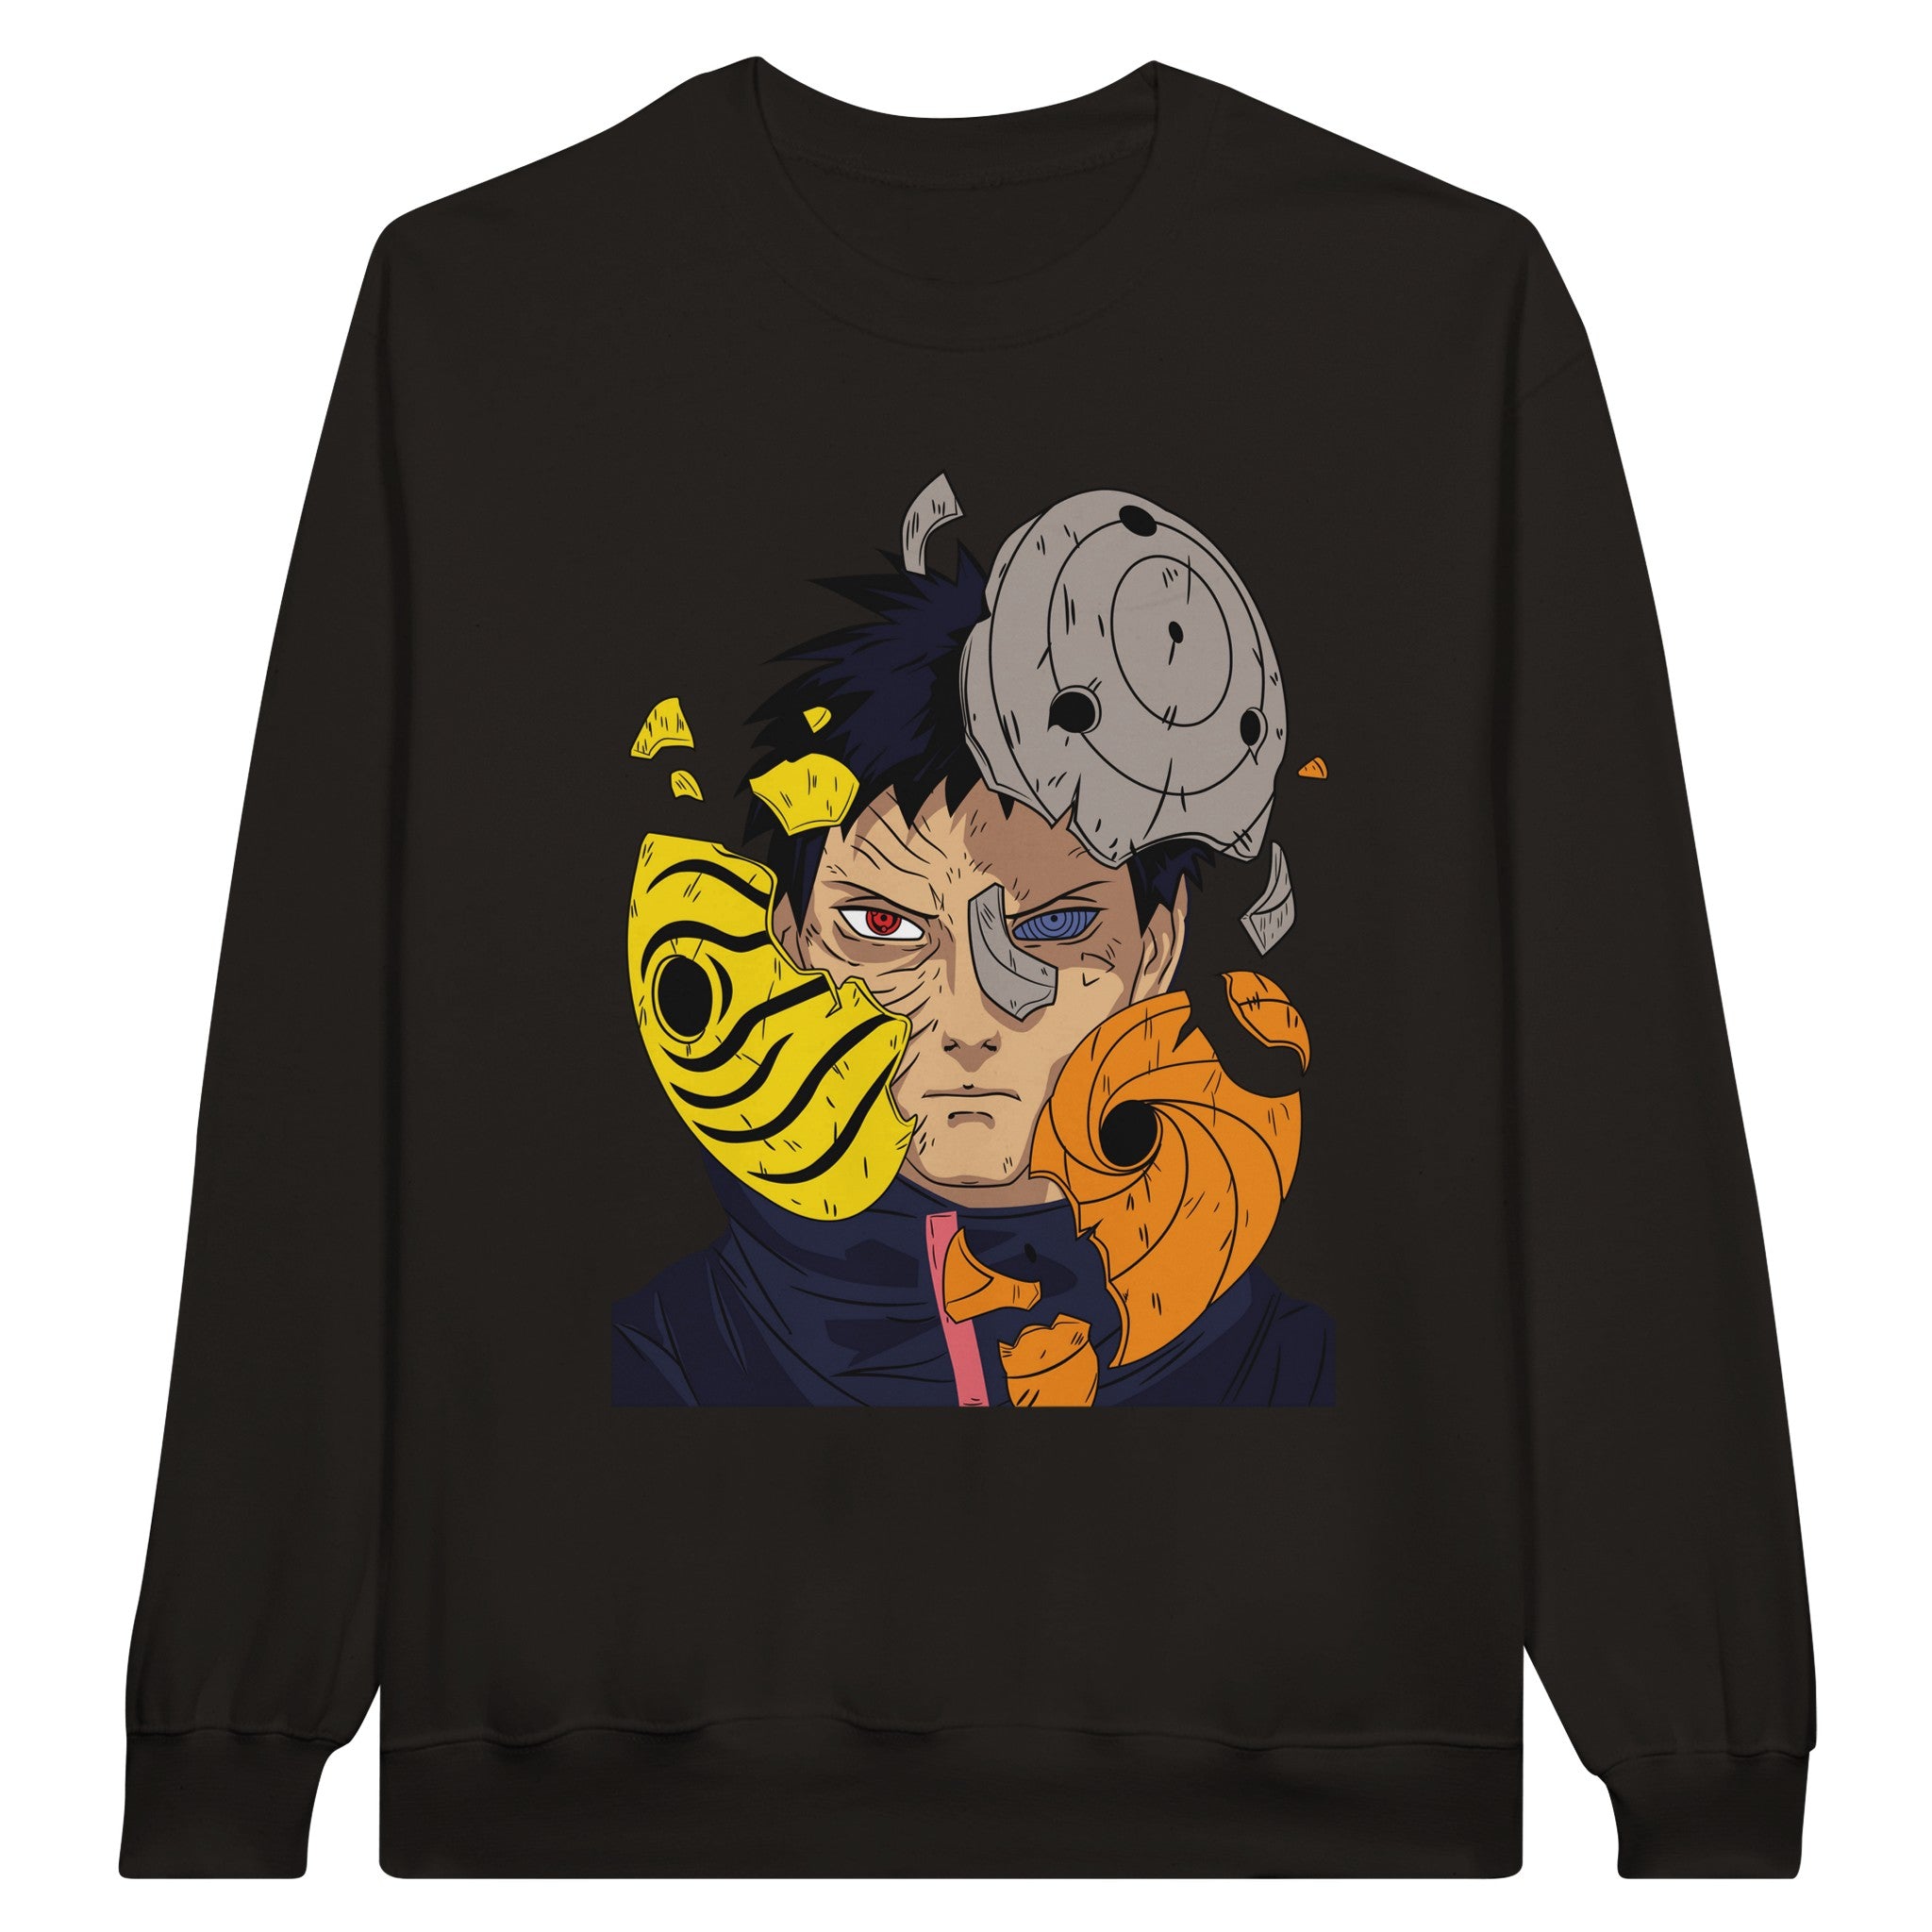 shop and buy obito uchiha anime clothing sweatshirt/jumper/longsleeve